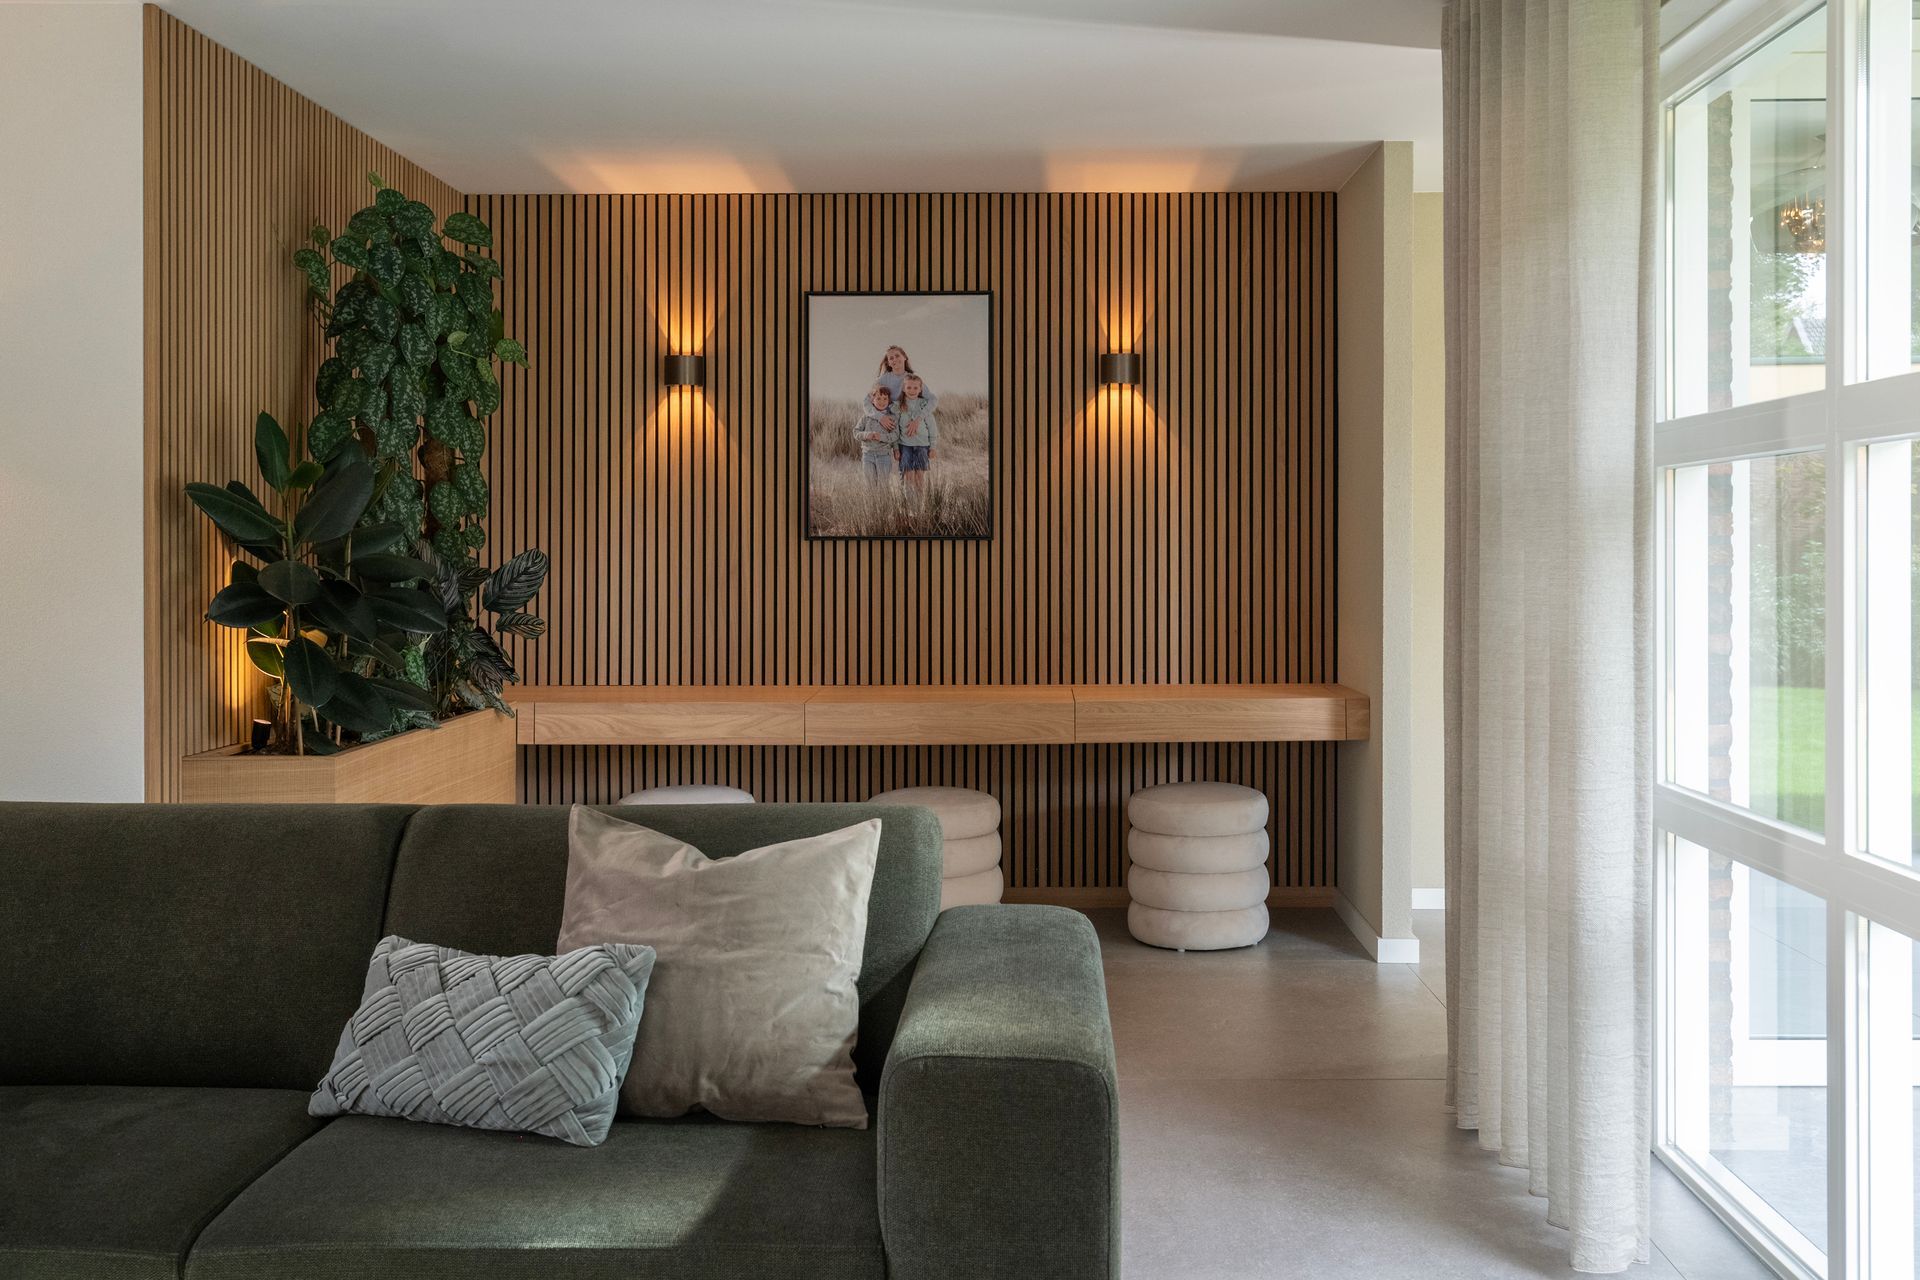 Dit maatwerk-meubel  vormt voor meer functionaliteit en sfeer in deze woning in Steenbergen.